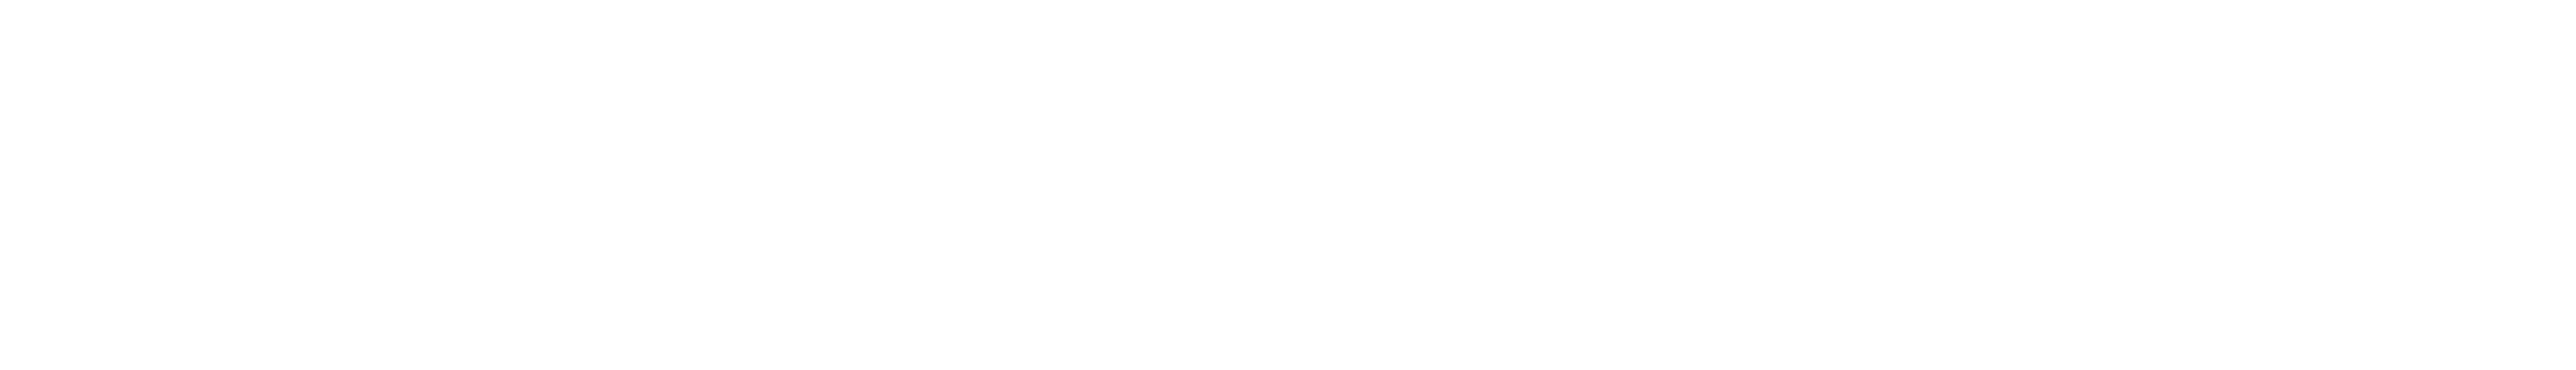 Israel_Railways_Logo copy